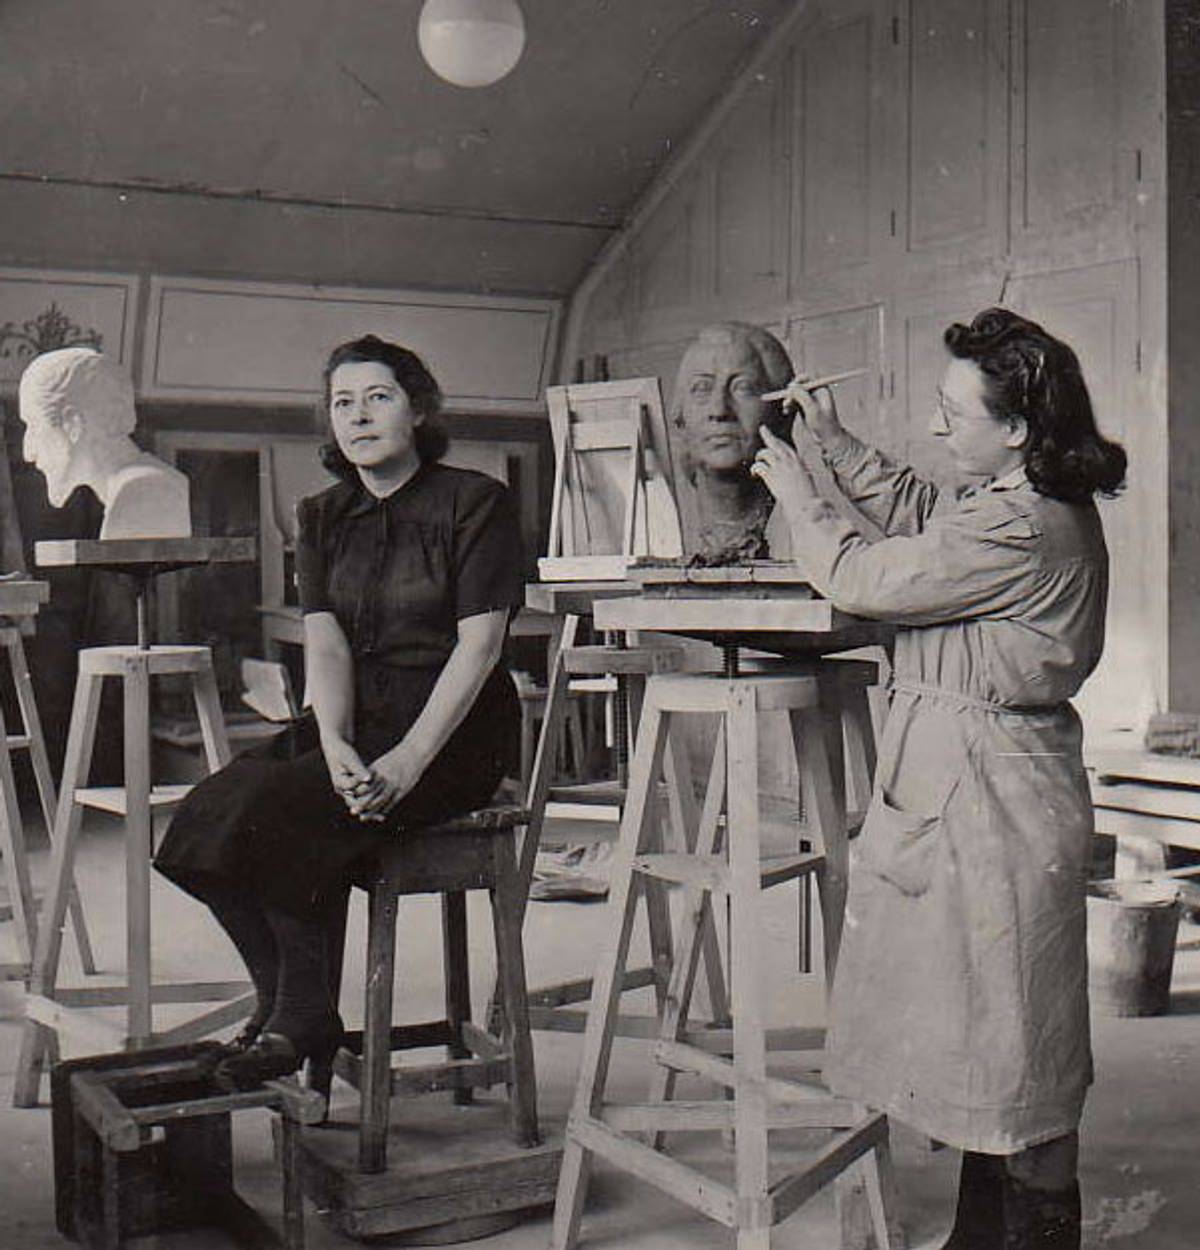 Zenia sculpting in her Stockholm studio.